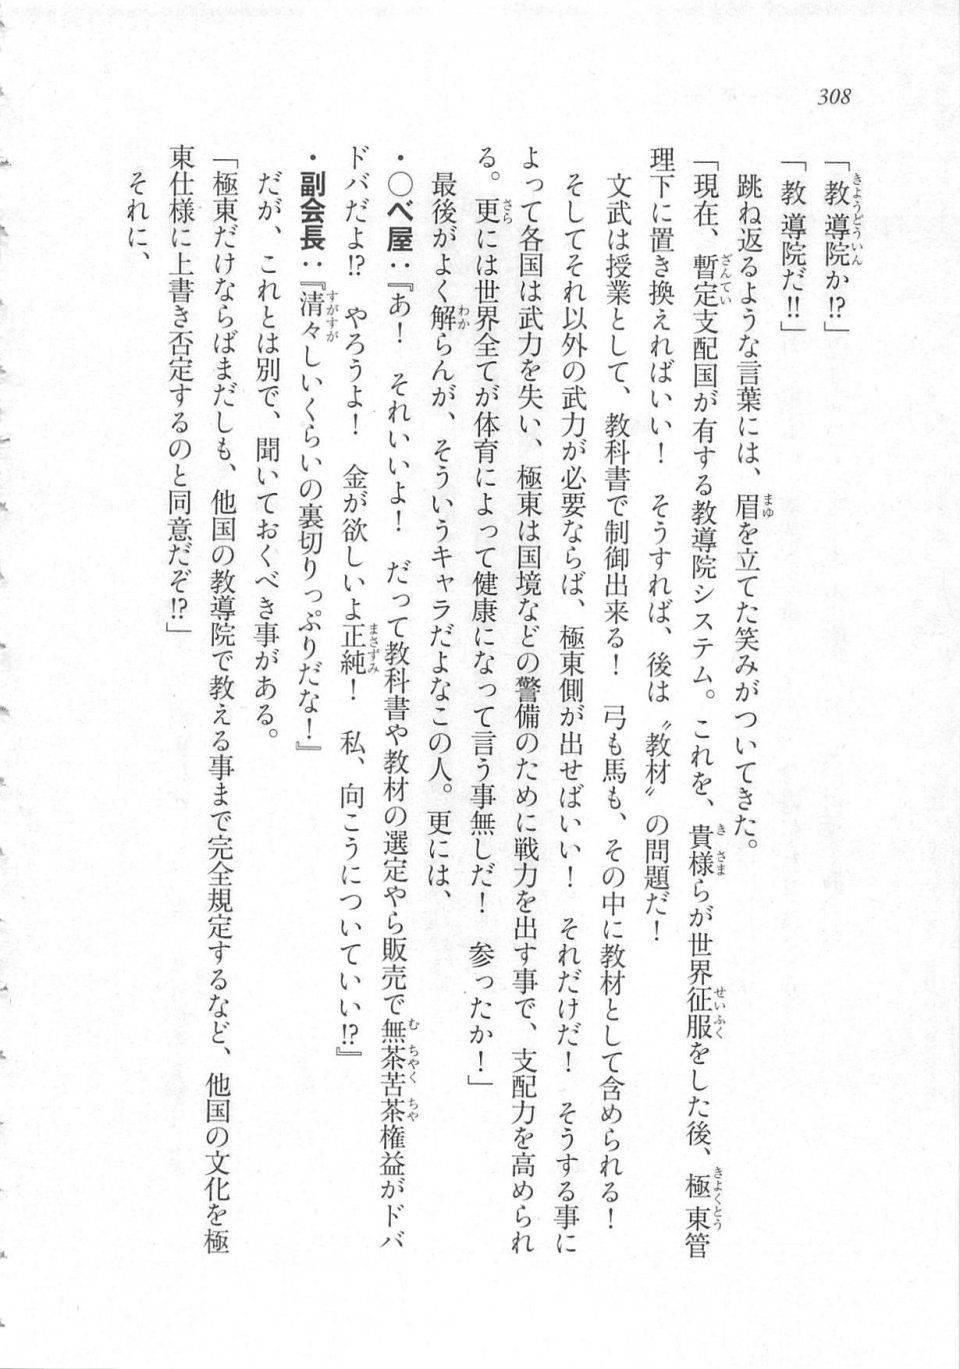 Kyoukai Senjou no Horizon LN Sidestory Vol 3 - Photo #312